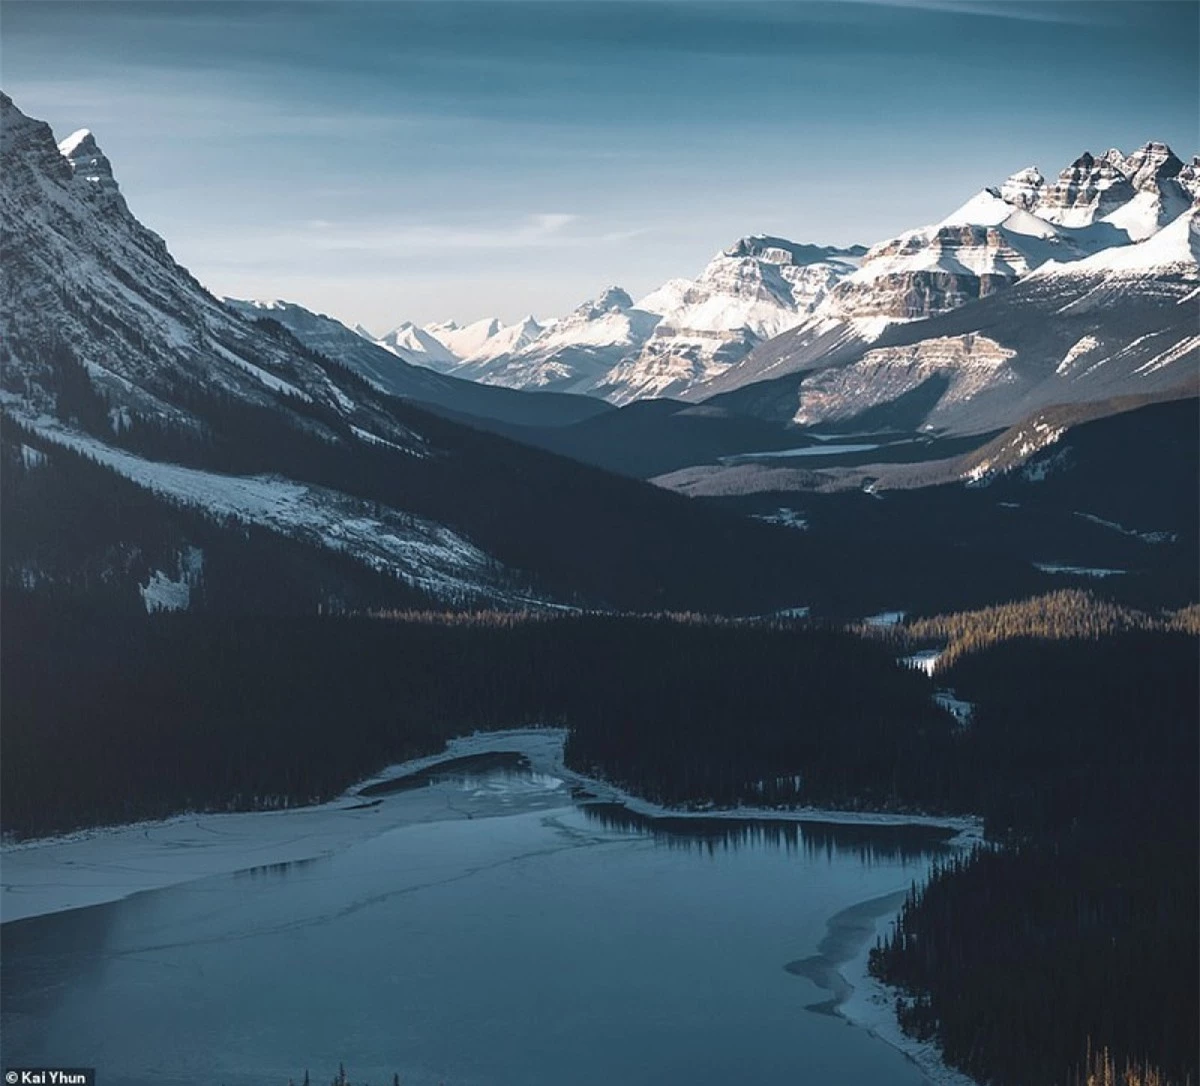 Lonely Planet cho biết Vườn quốc gia Banff là một trong những cuộc diễu hành nổi tiếng của các thắng cảnh hàng đầu tại Canada và chiếm được cảm tình của nhiều khách du lịch khi đến đây tham quan./.